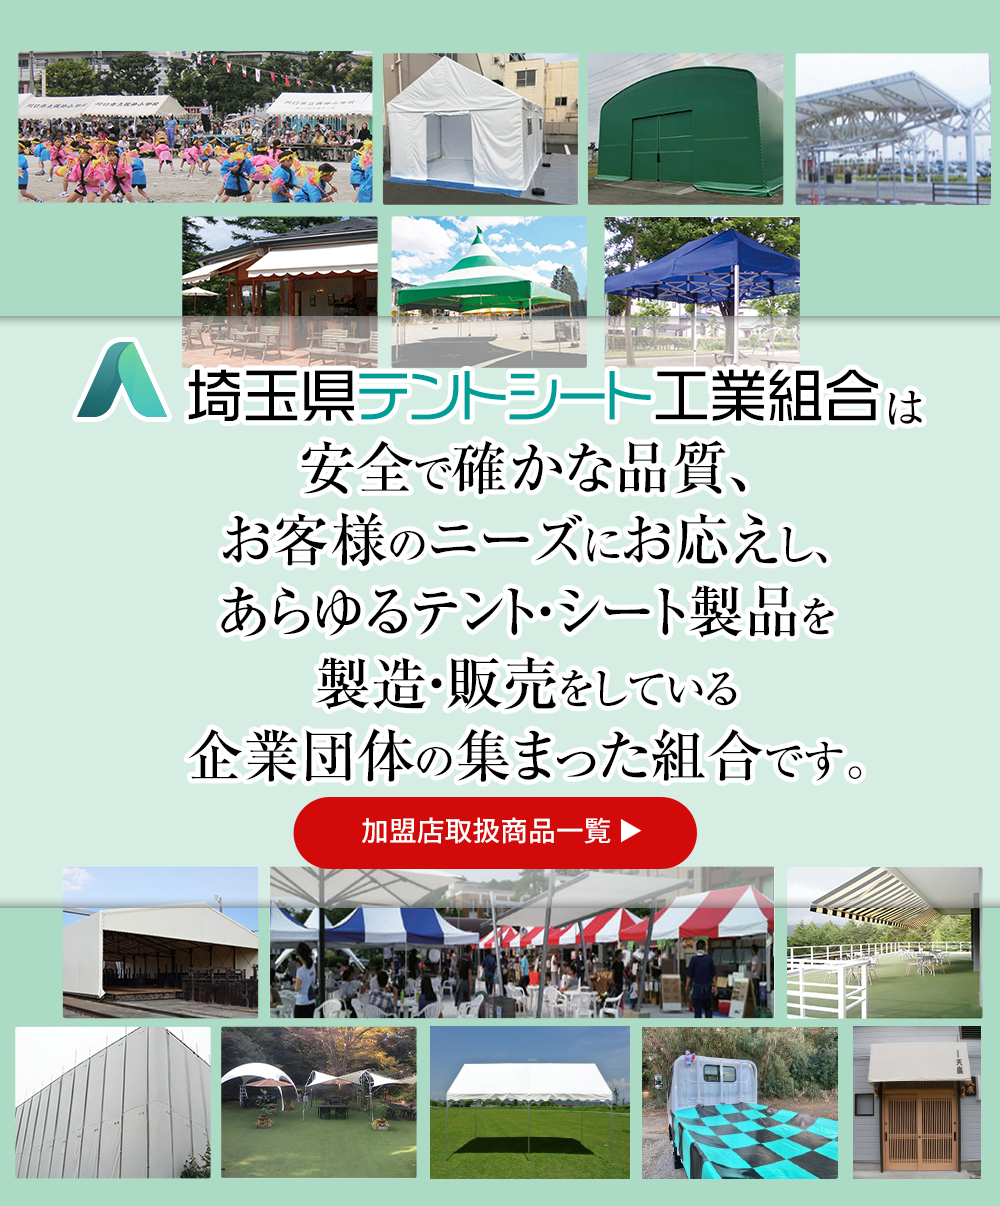 埼玉県テントシート工業組合は安全で確かな品質の製品をお約束します